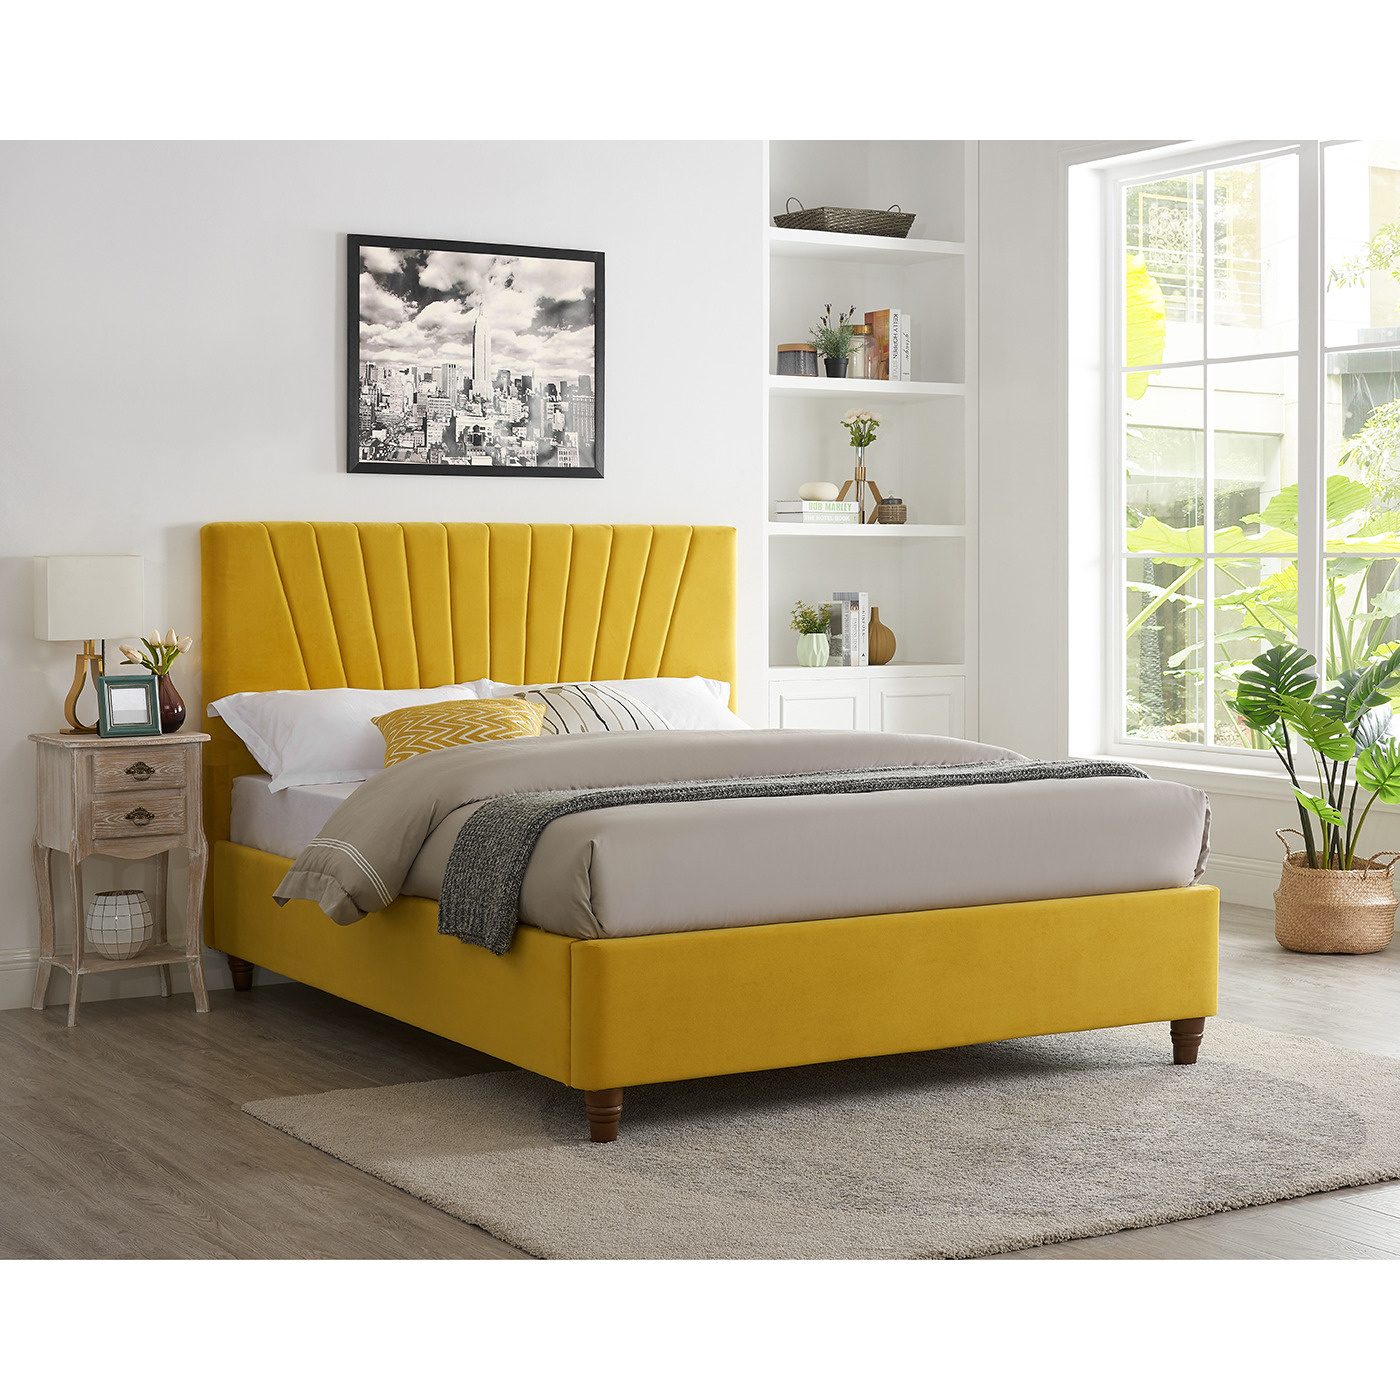 LPD Lexie Mustard Velvet Fabric Bed Frame - image 1